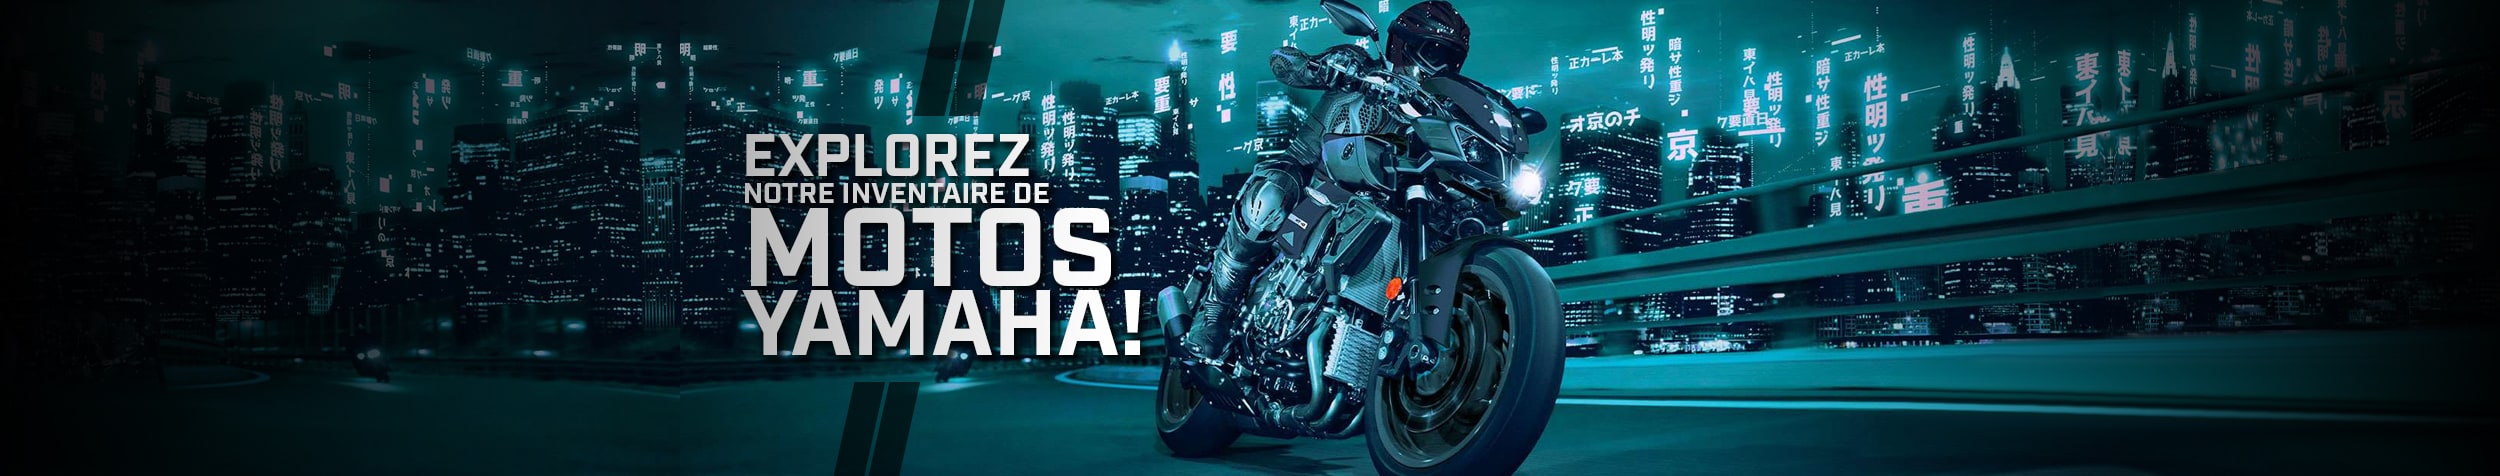 Motos Yamaha neuves